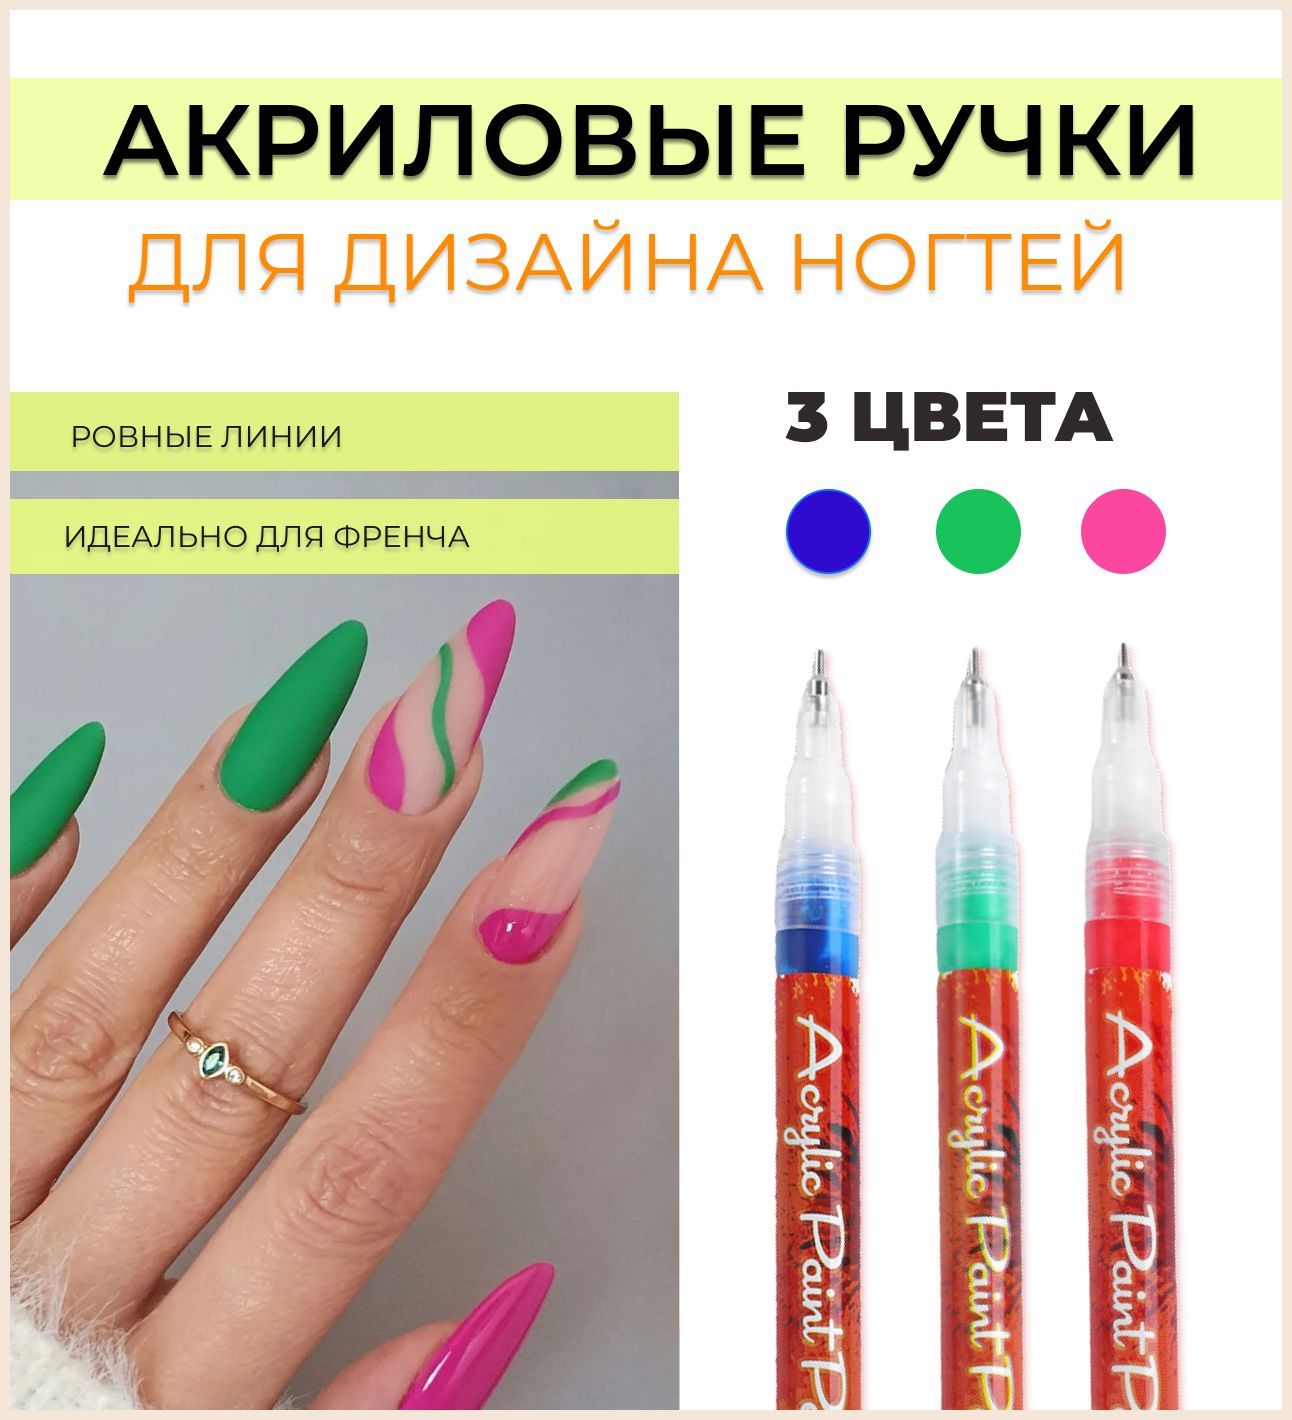 Кисти для дизайна ногтей купить недорого в Москве - интернет-магазин FRENCHnails